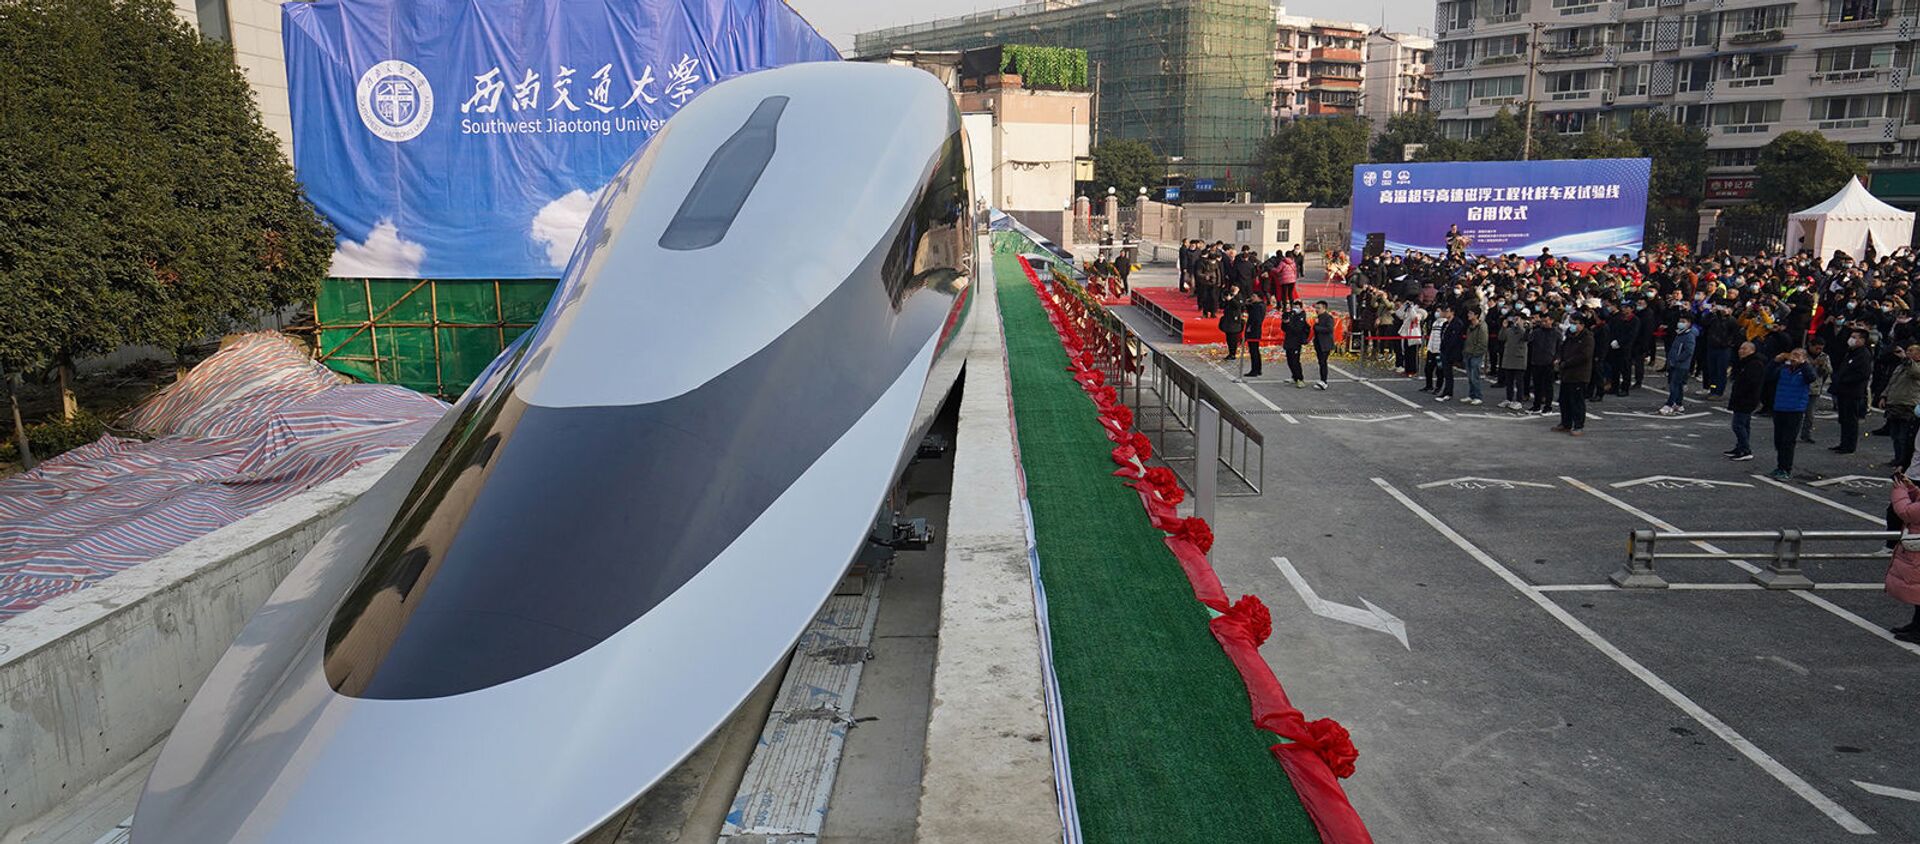 Прототип магнитно-левитационного поезда на церемонии запуска в Чэнду (13 января 2021). Китай - Sputnik Армения, 1920, 15.01.2021